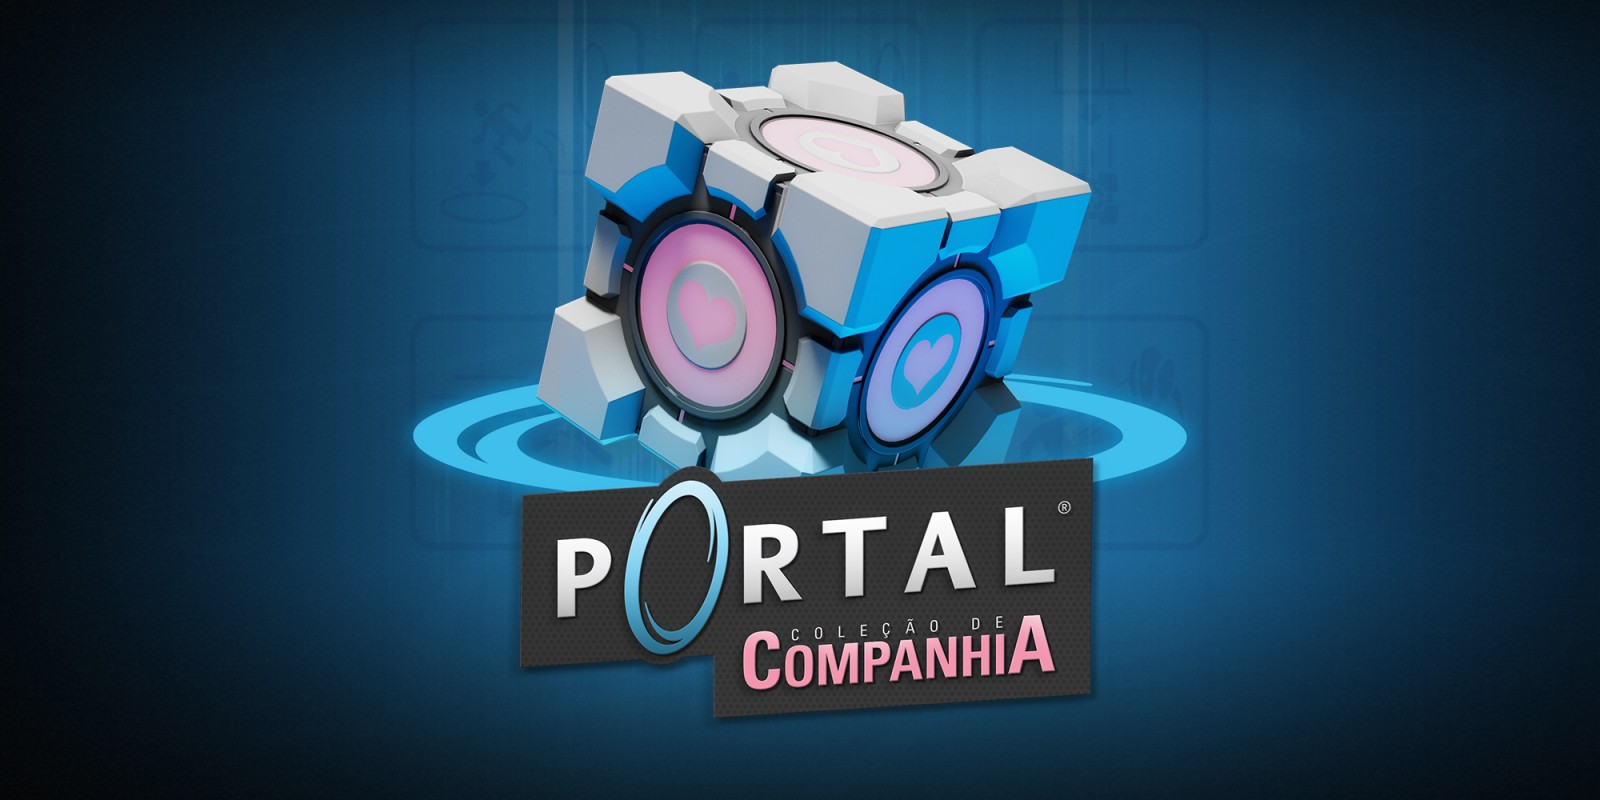 Portal: Coleção de Companhia